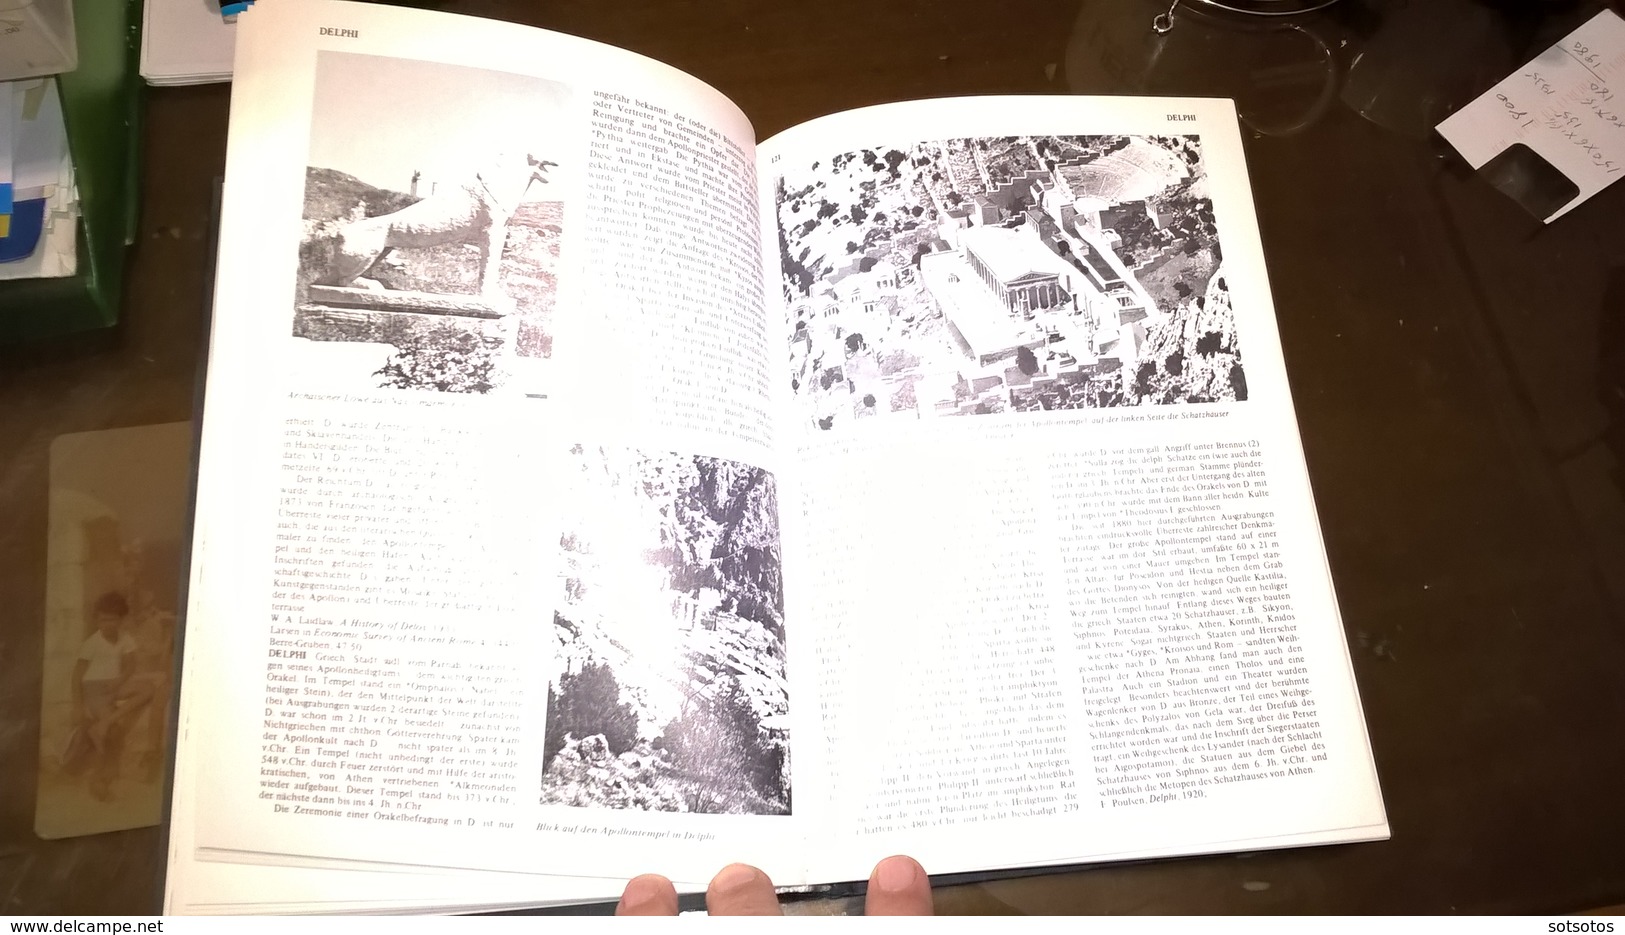 ILLUSTRIERTES LEXIKON des ALTERTUMS:  1993 - 446 pgS 24x17,50 cent. Many pictures' - excellent condition as new